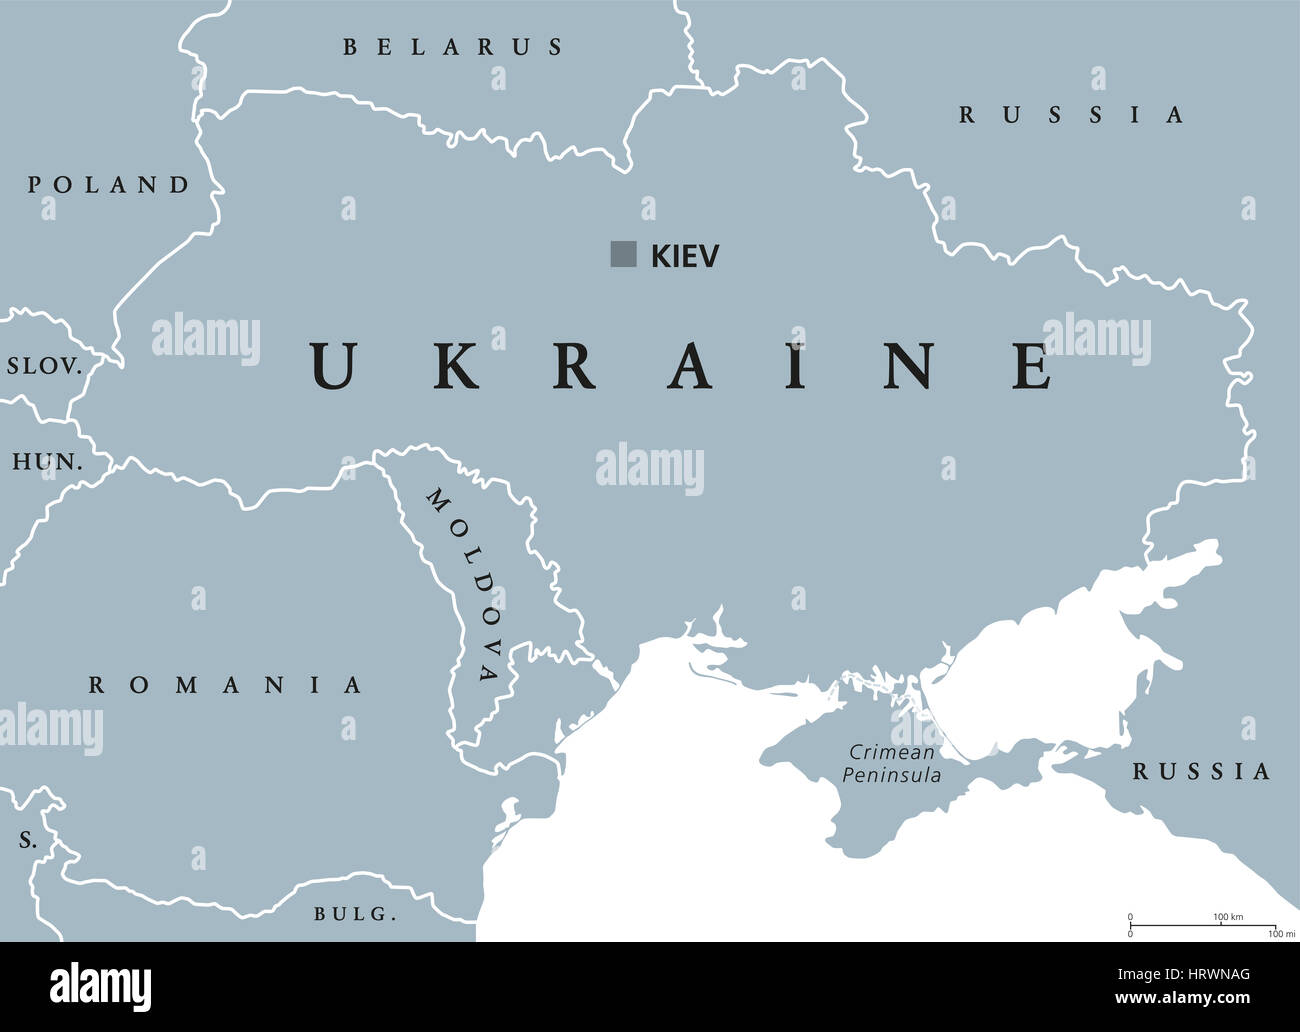 Mapa político de Ucrania con la capital, Kiev, las fronteras nacionales, la Península de Crimea y países vecinos. Estado de Europa oriental. Foto de stock